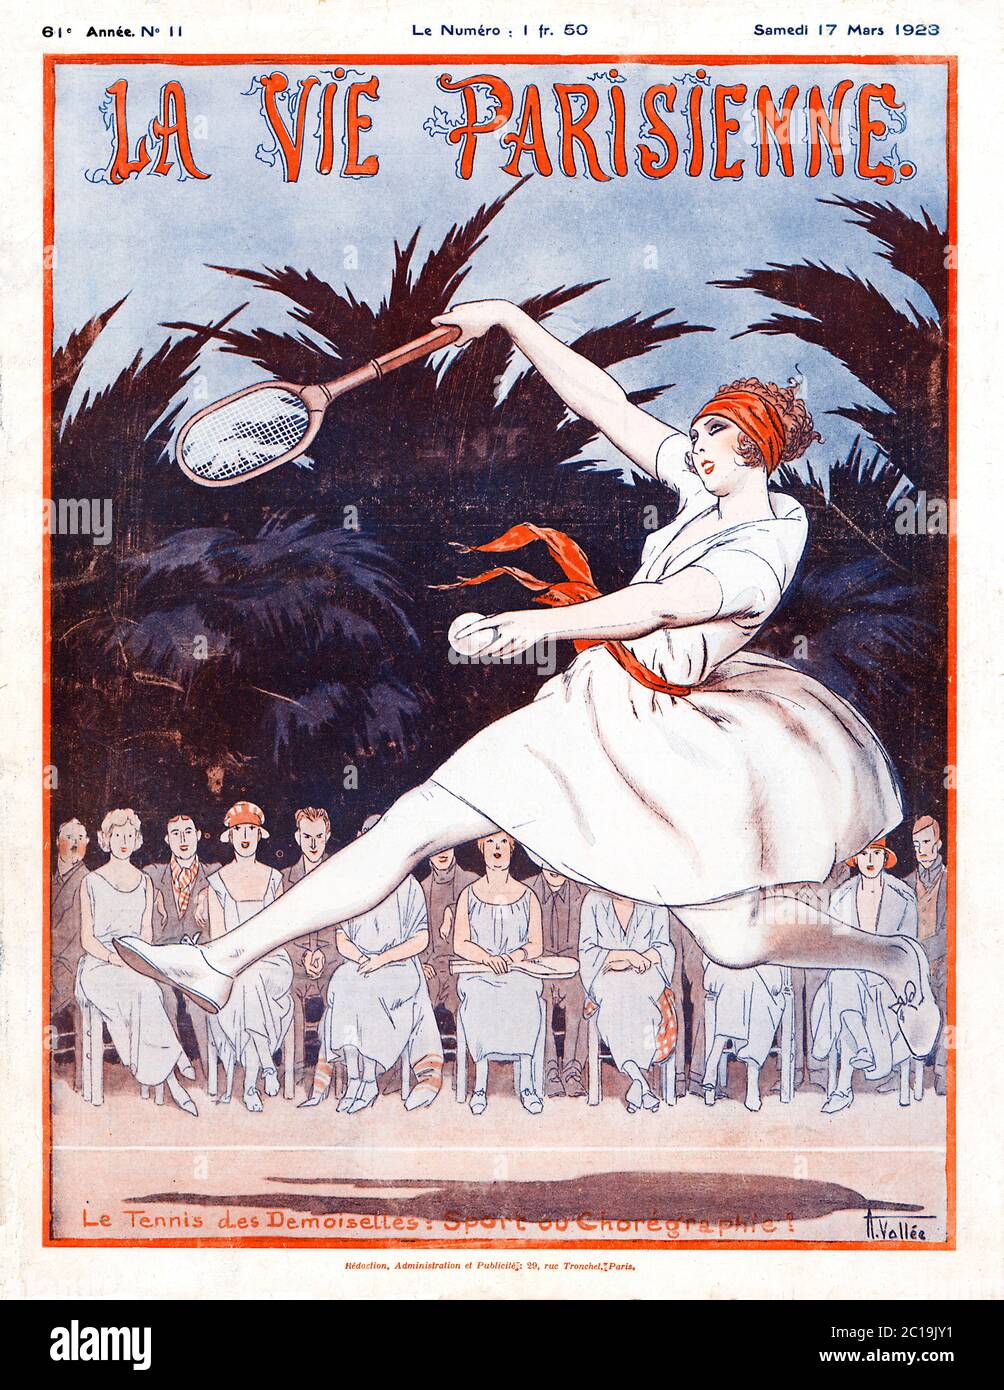 Tennis des Desmoiselles, Sport oder Choreographie? 1923 Französisches Magazin-Cover, das die Anmut und Schönheit des Damen-Tennis preist Stockfoto